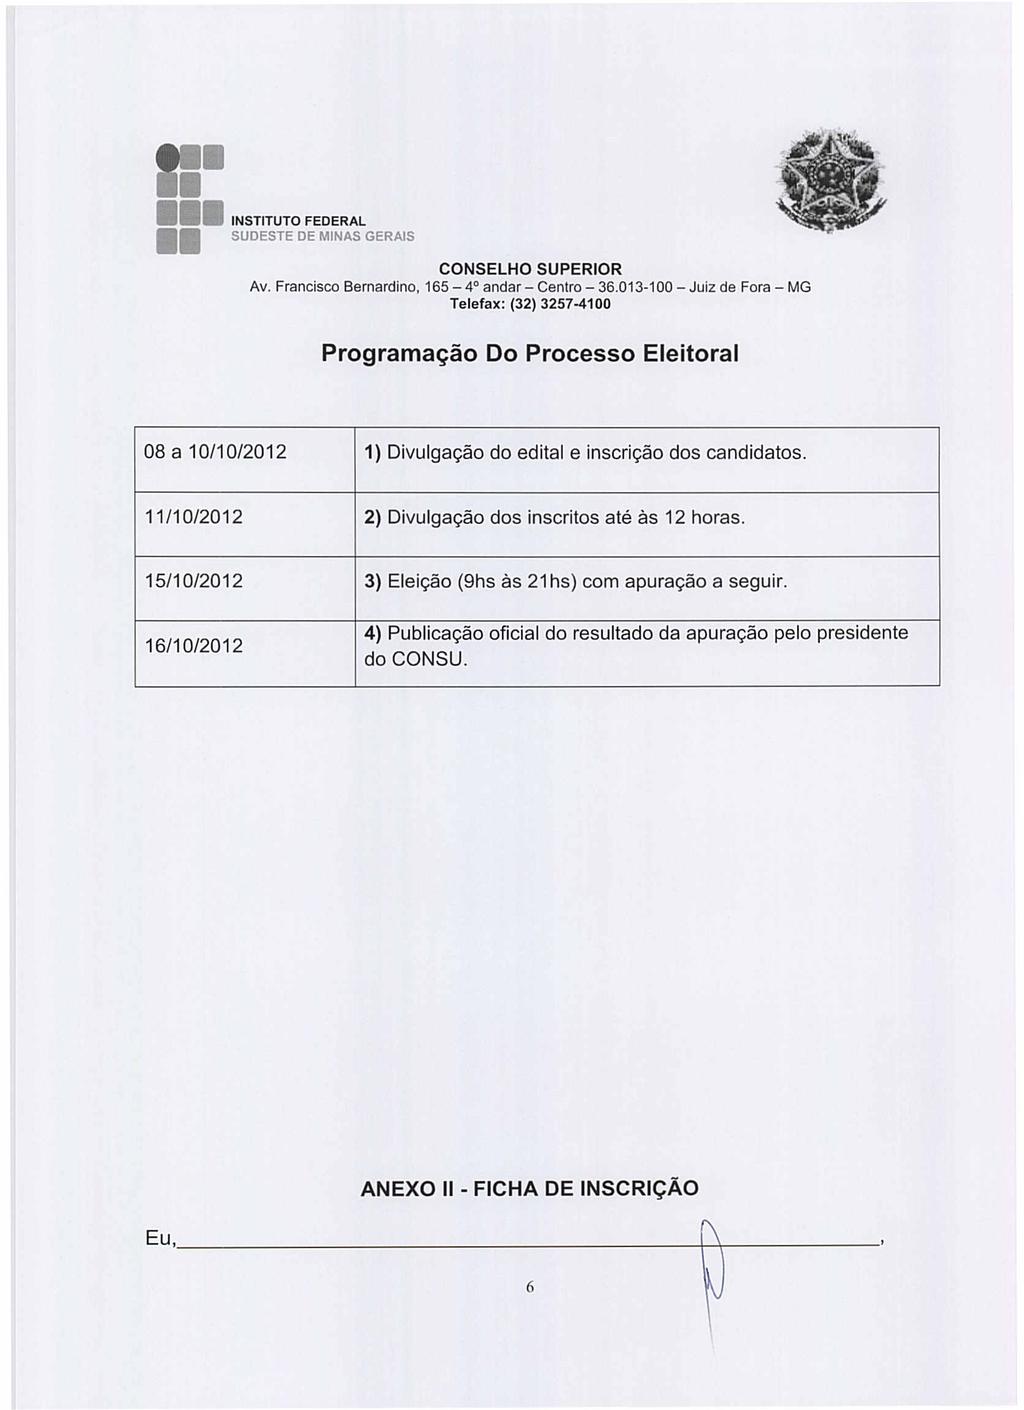 165-4 andar - Cenlra - 36.013-100 - Juiz de Fora - MG Programação Do Processo Eleitoral 08 a 10/10/2012 1) Divulgação do edital e inscrição dos candidatos.